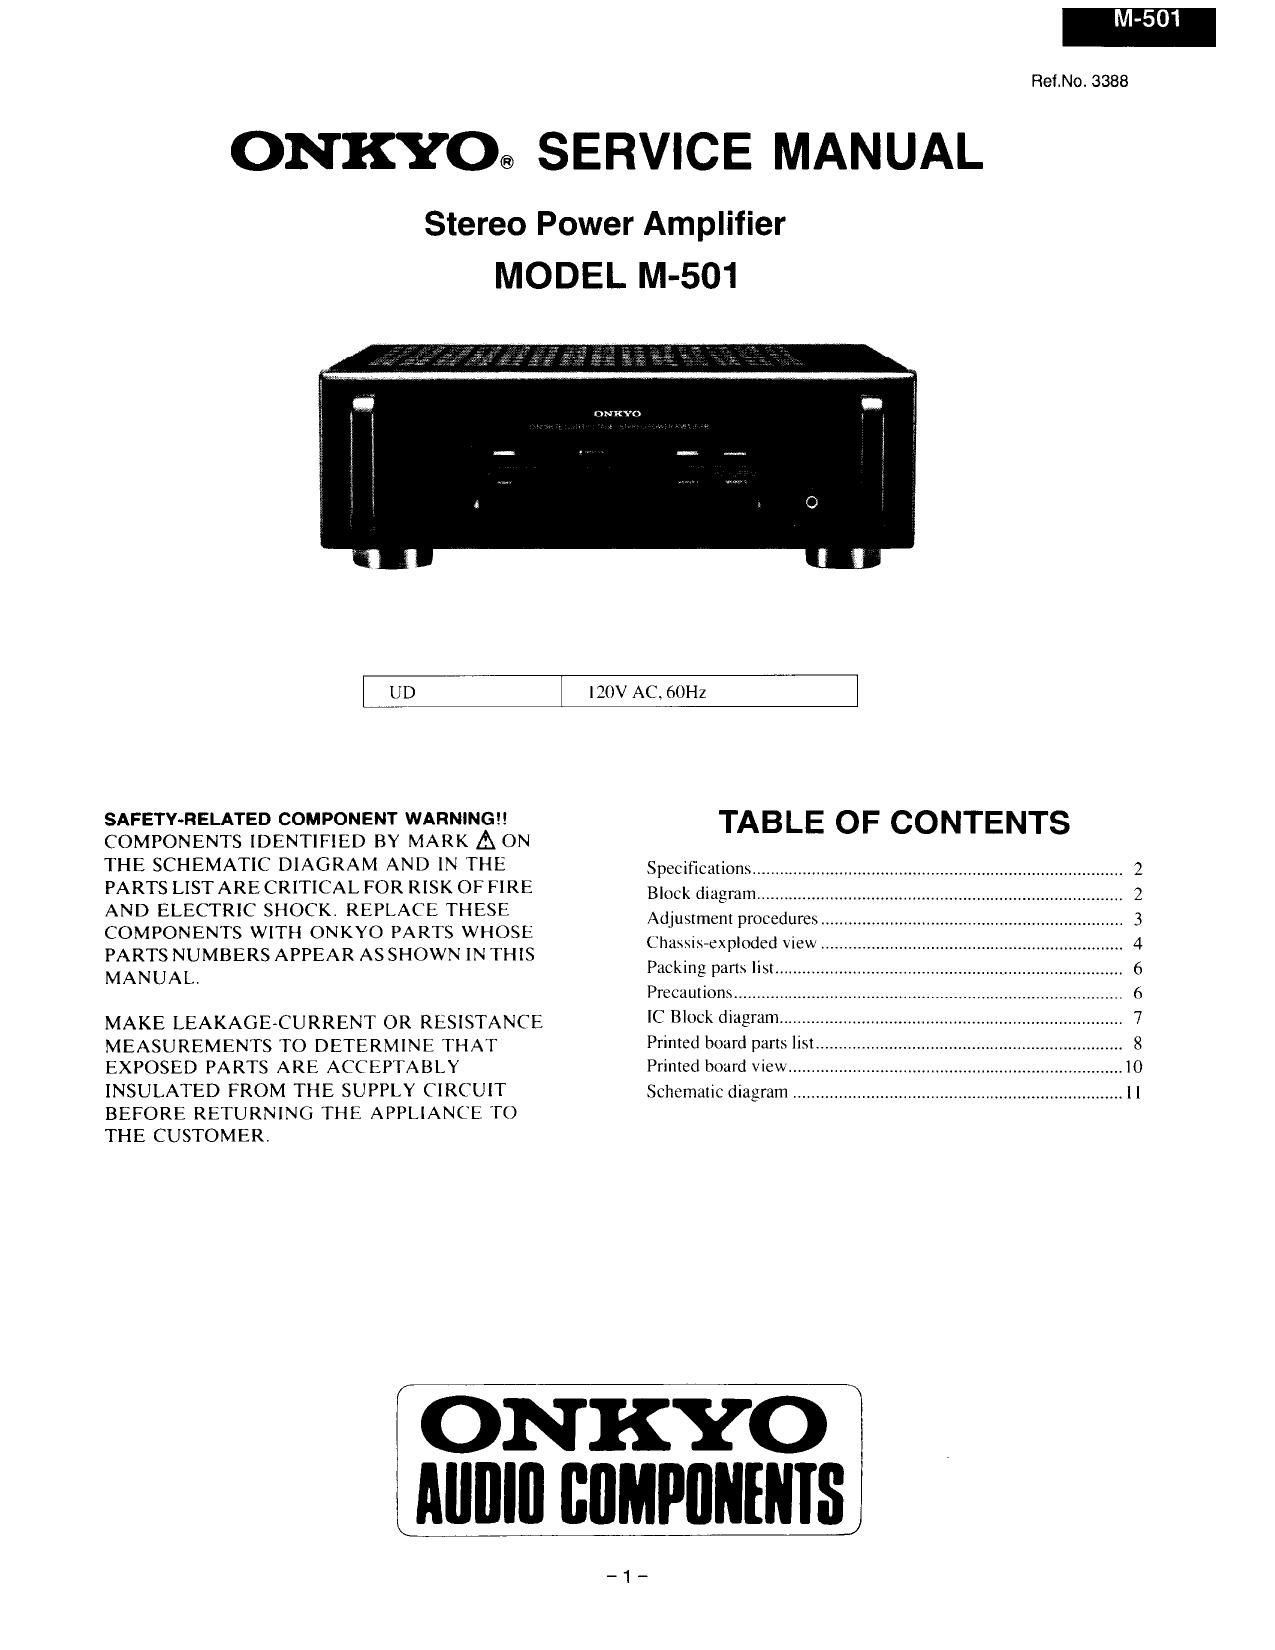 Onkyo M 501 Service Manual